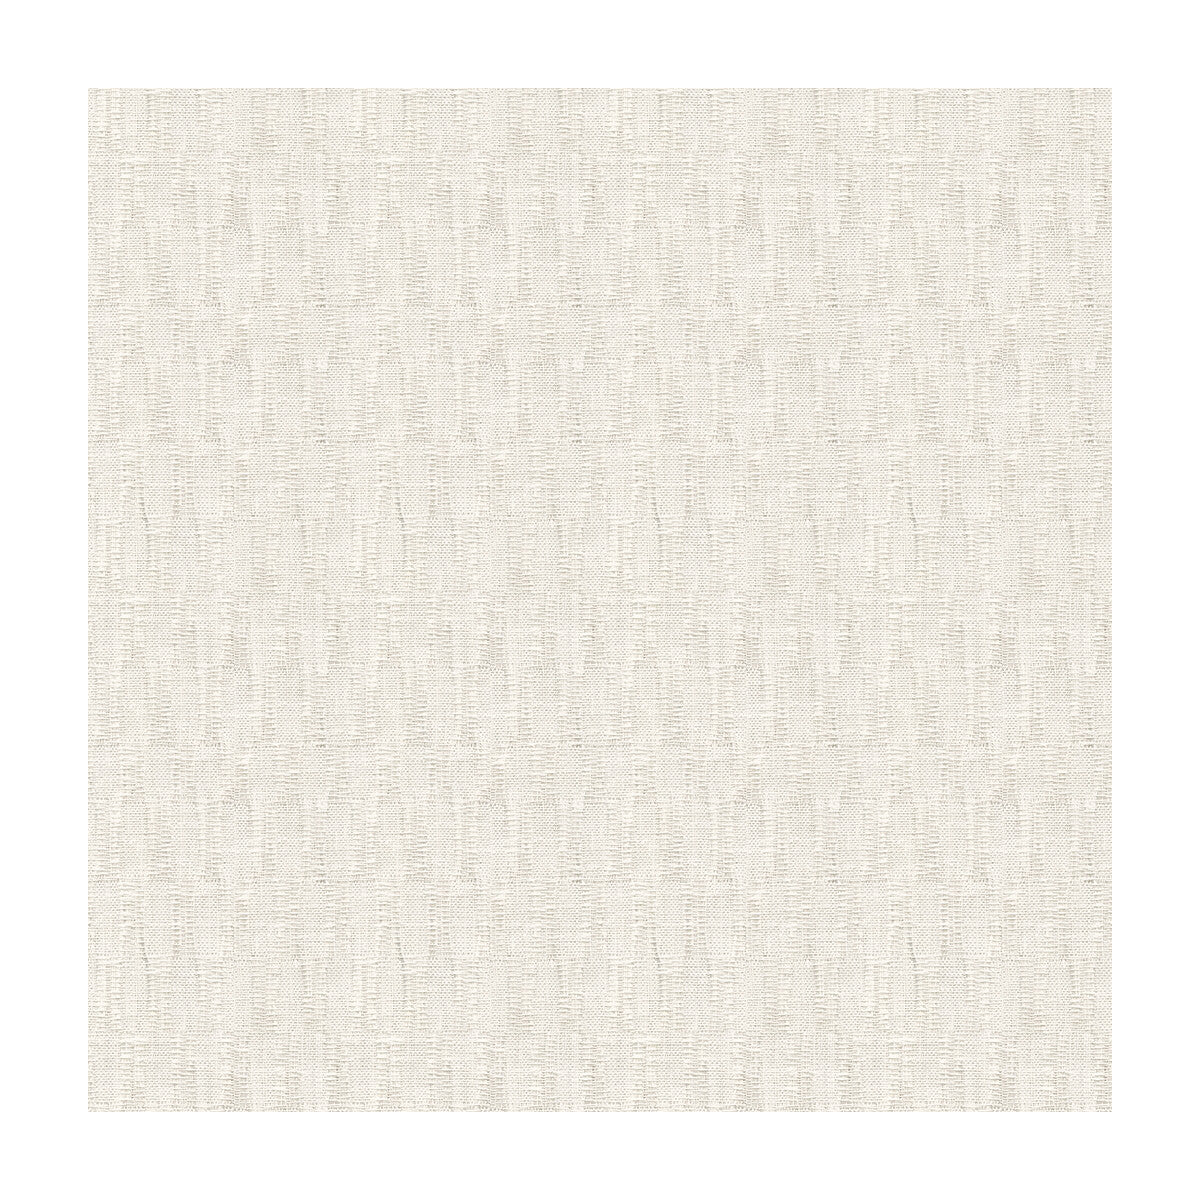 Kravet Basics fabric in 4126-101 color - pattern 4126.101.0 - by Kravet Basics